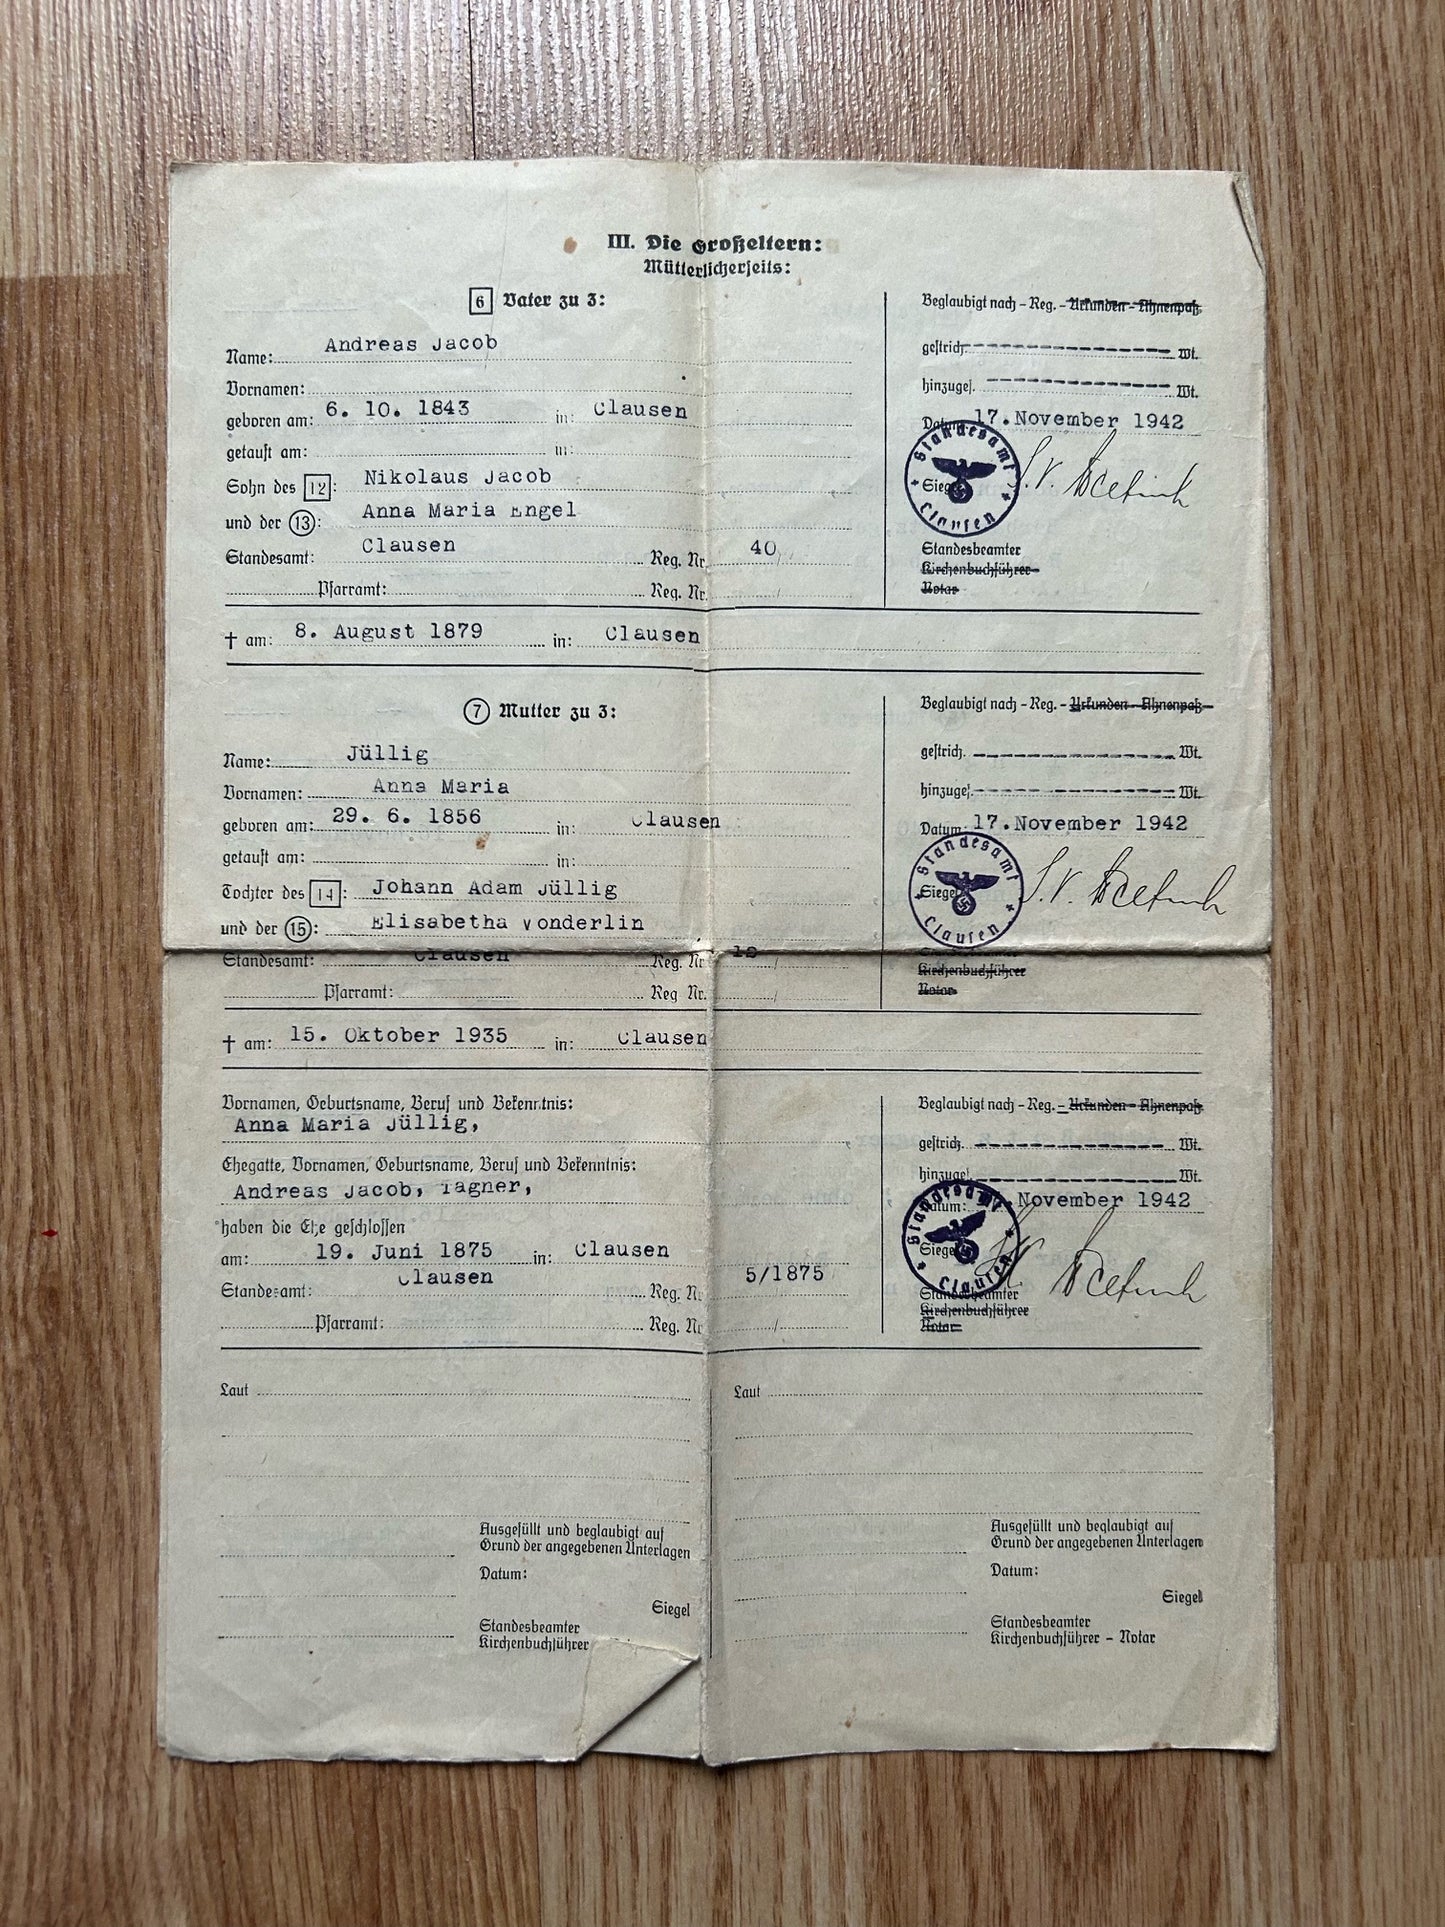 Third Reich Ancestry document - Wehrmacht stamped